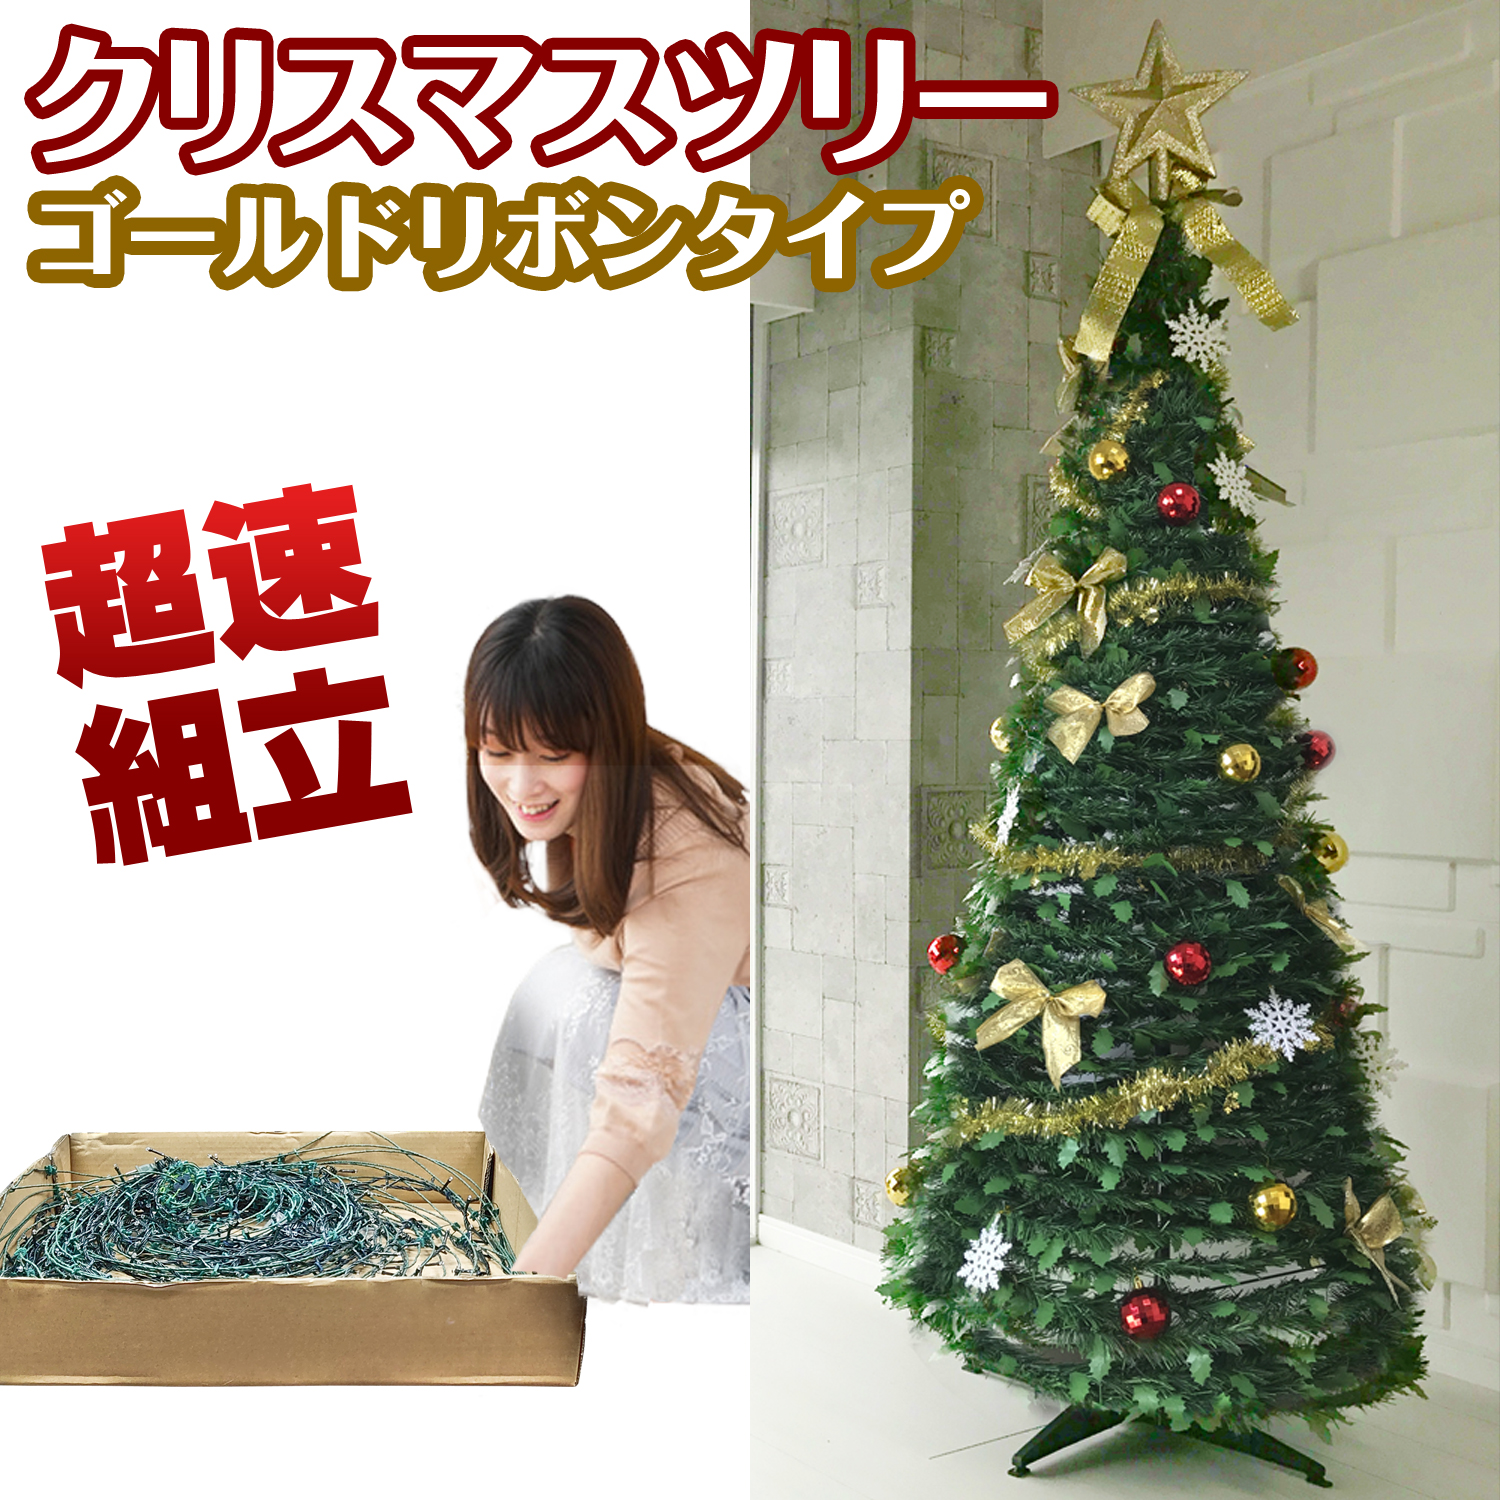 【楽天市場】被せて完成 クリスマスツリー 180cm スノー 